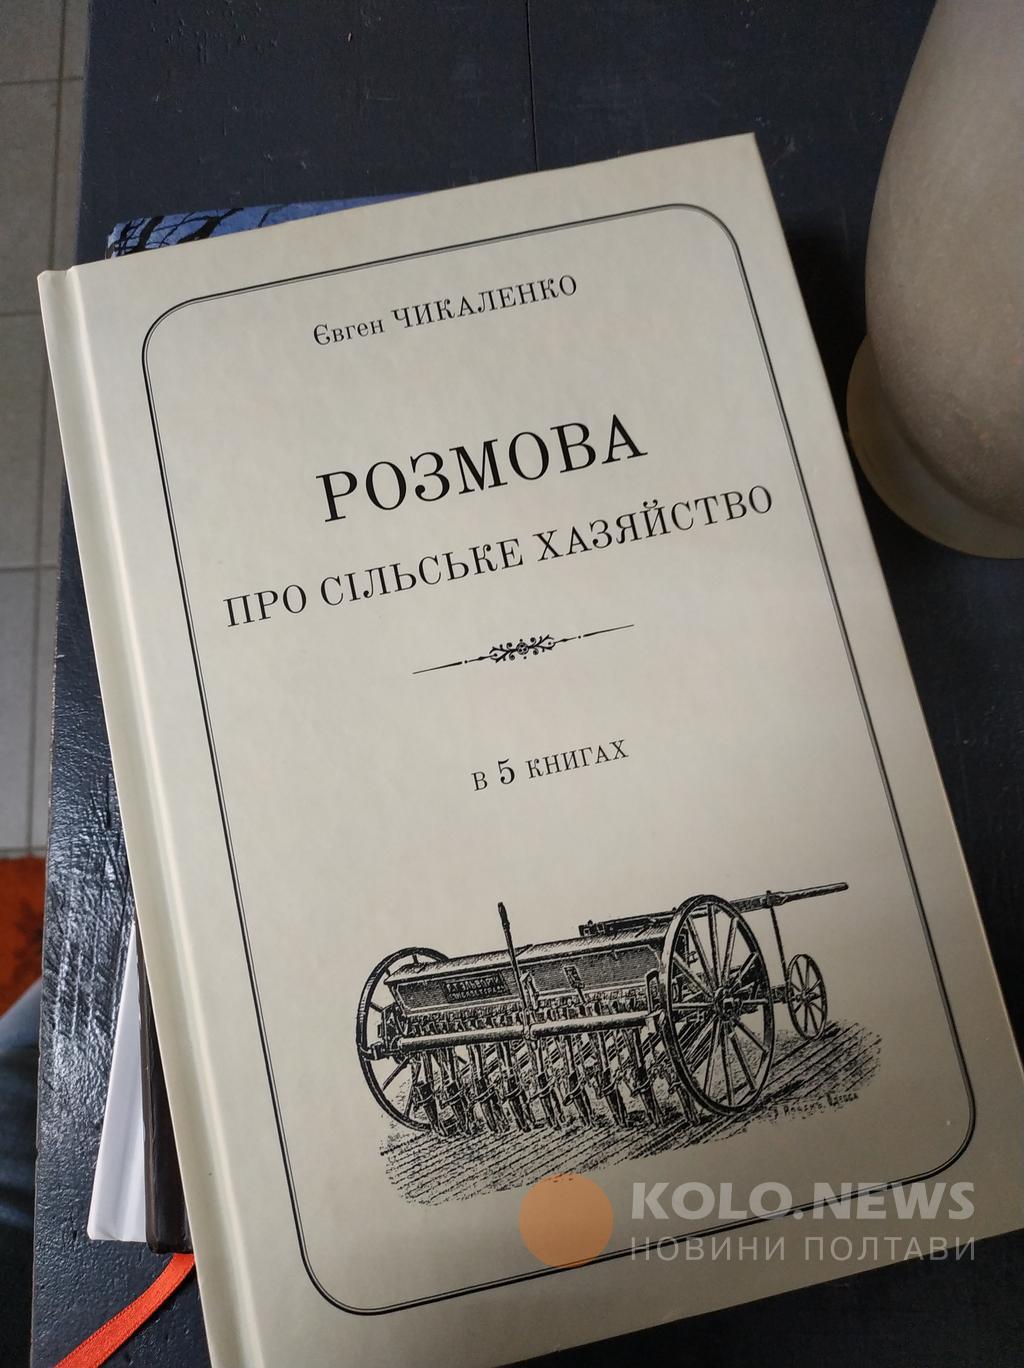 У Полтаві презентують книгу Євгена Чикаленка «Розмови про сільське хазяйство»